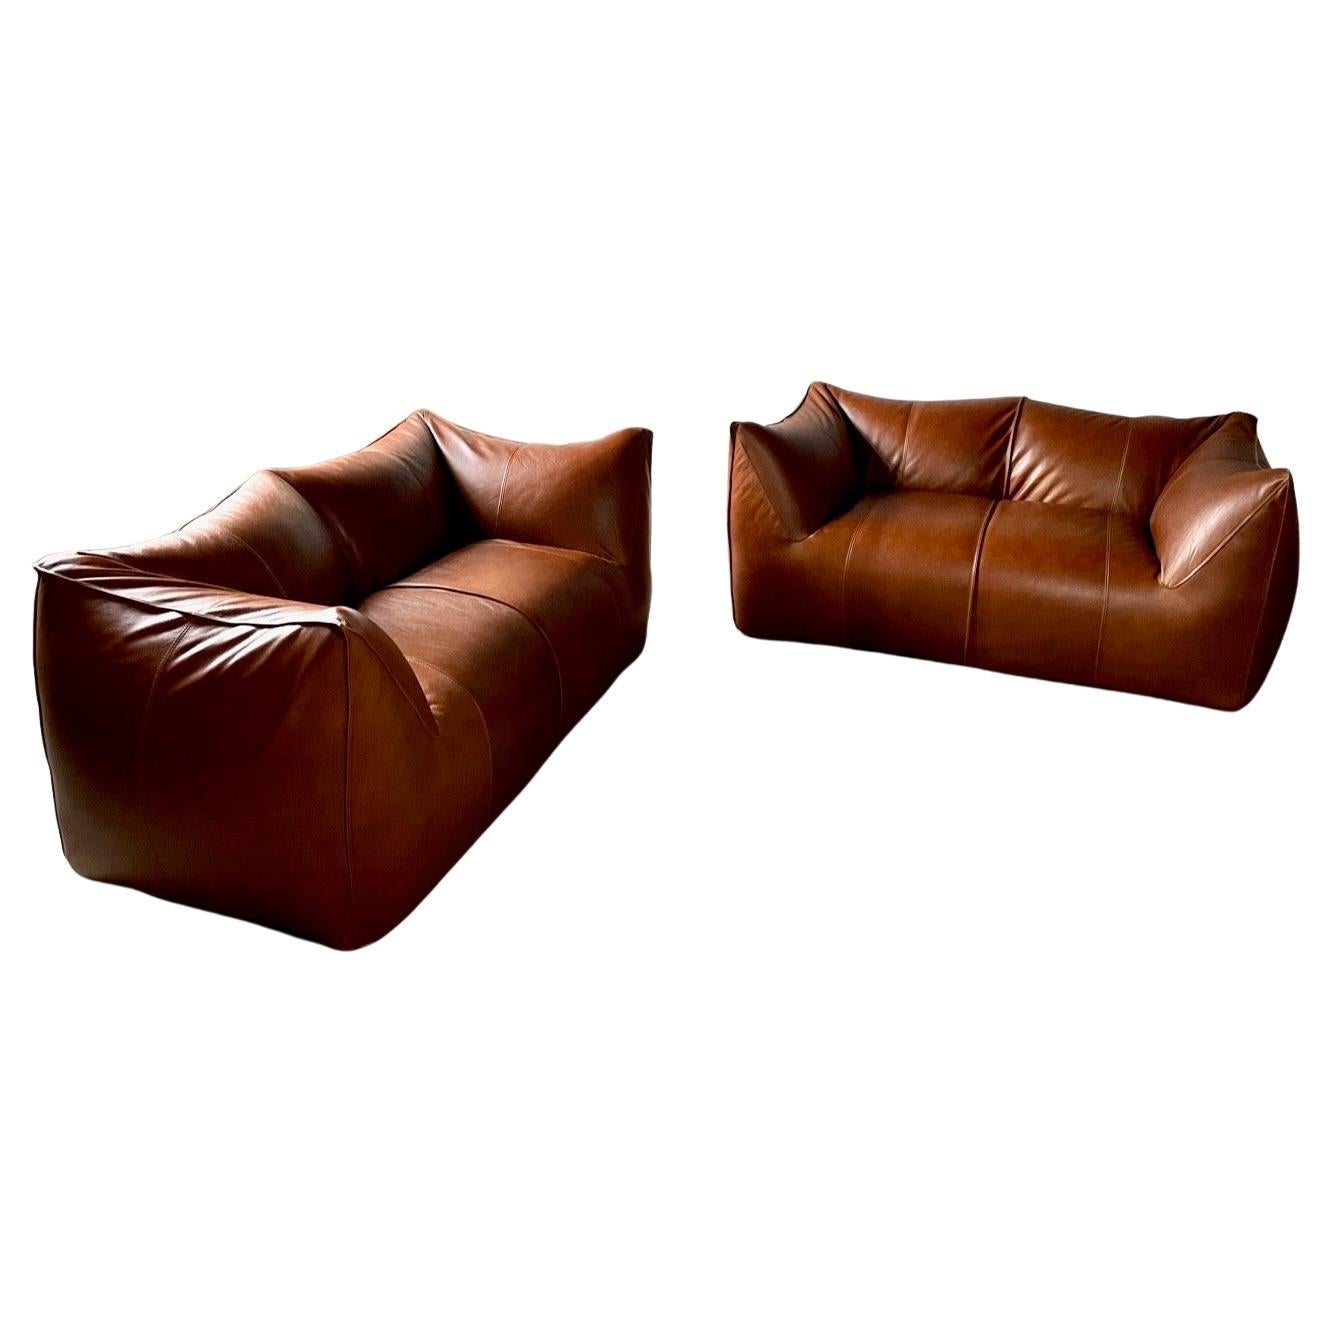 Stock of Three Le Bambole Sofa’s in Cognac Leather, Mario Bellini for B&B Italia For Sale